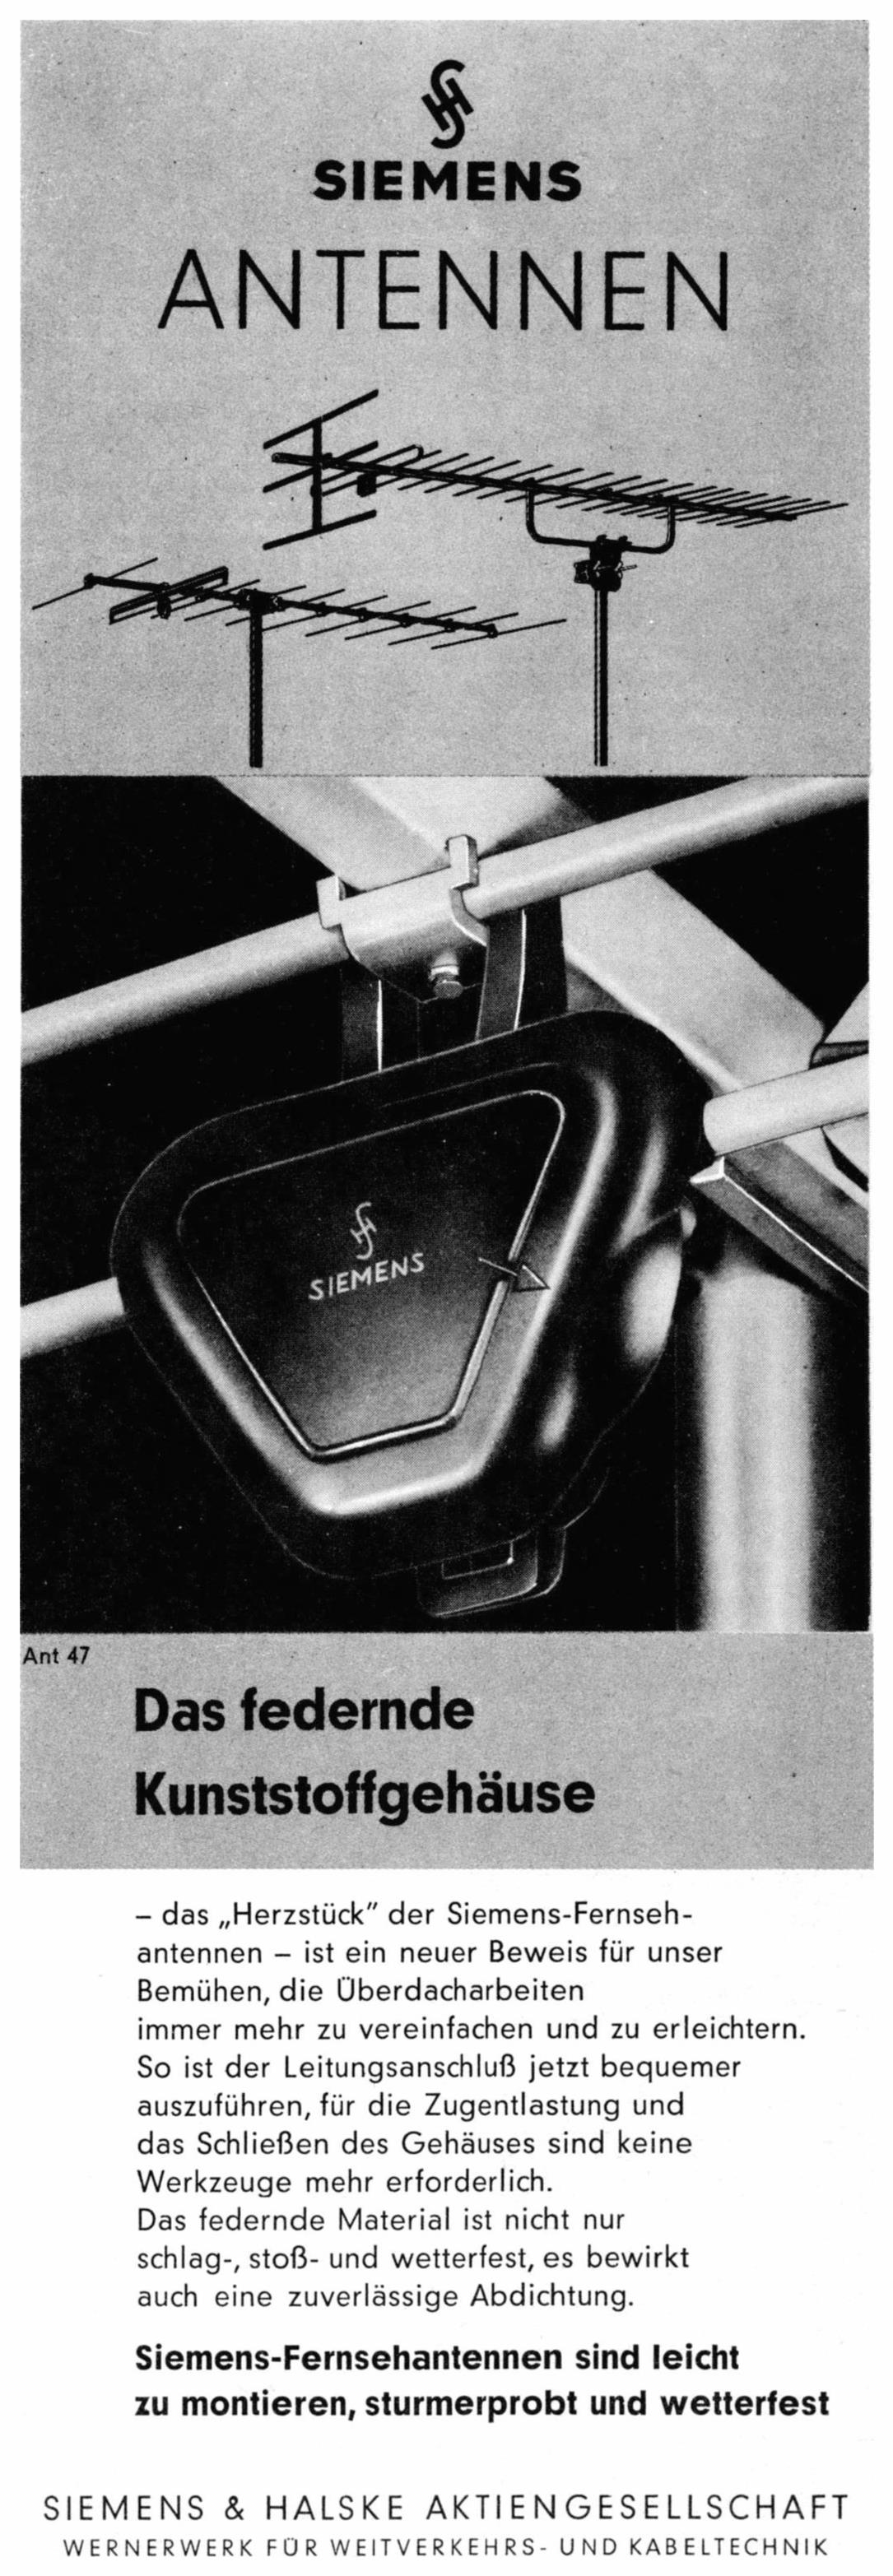 Siemens 1961 17.jpg